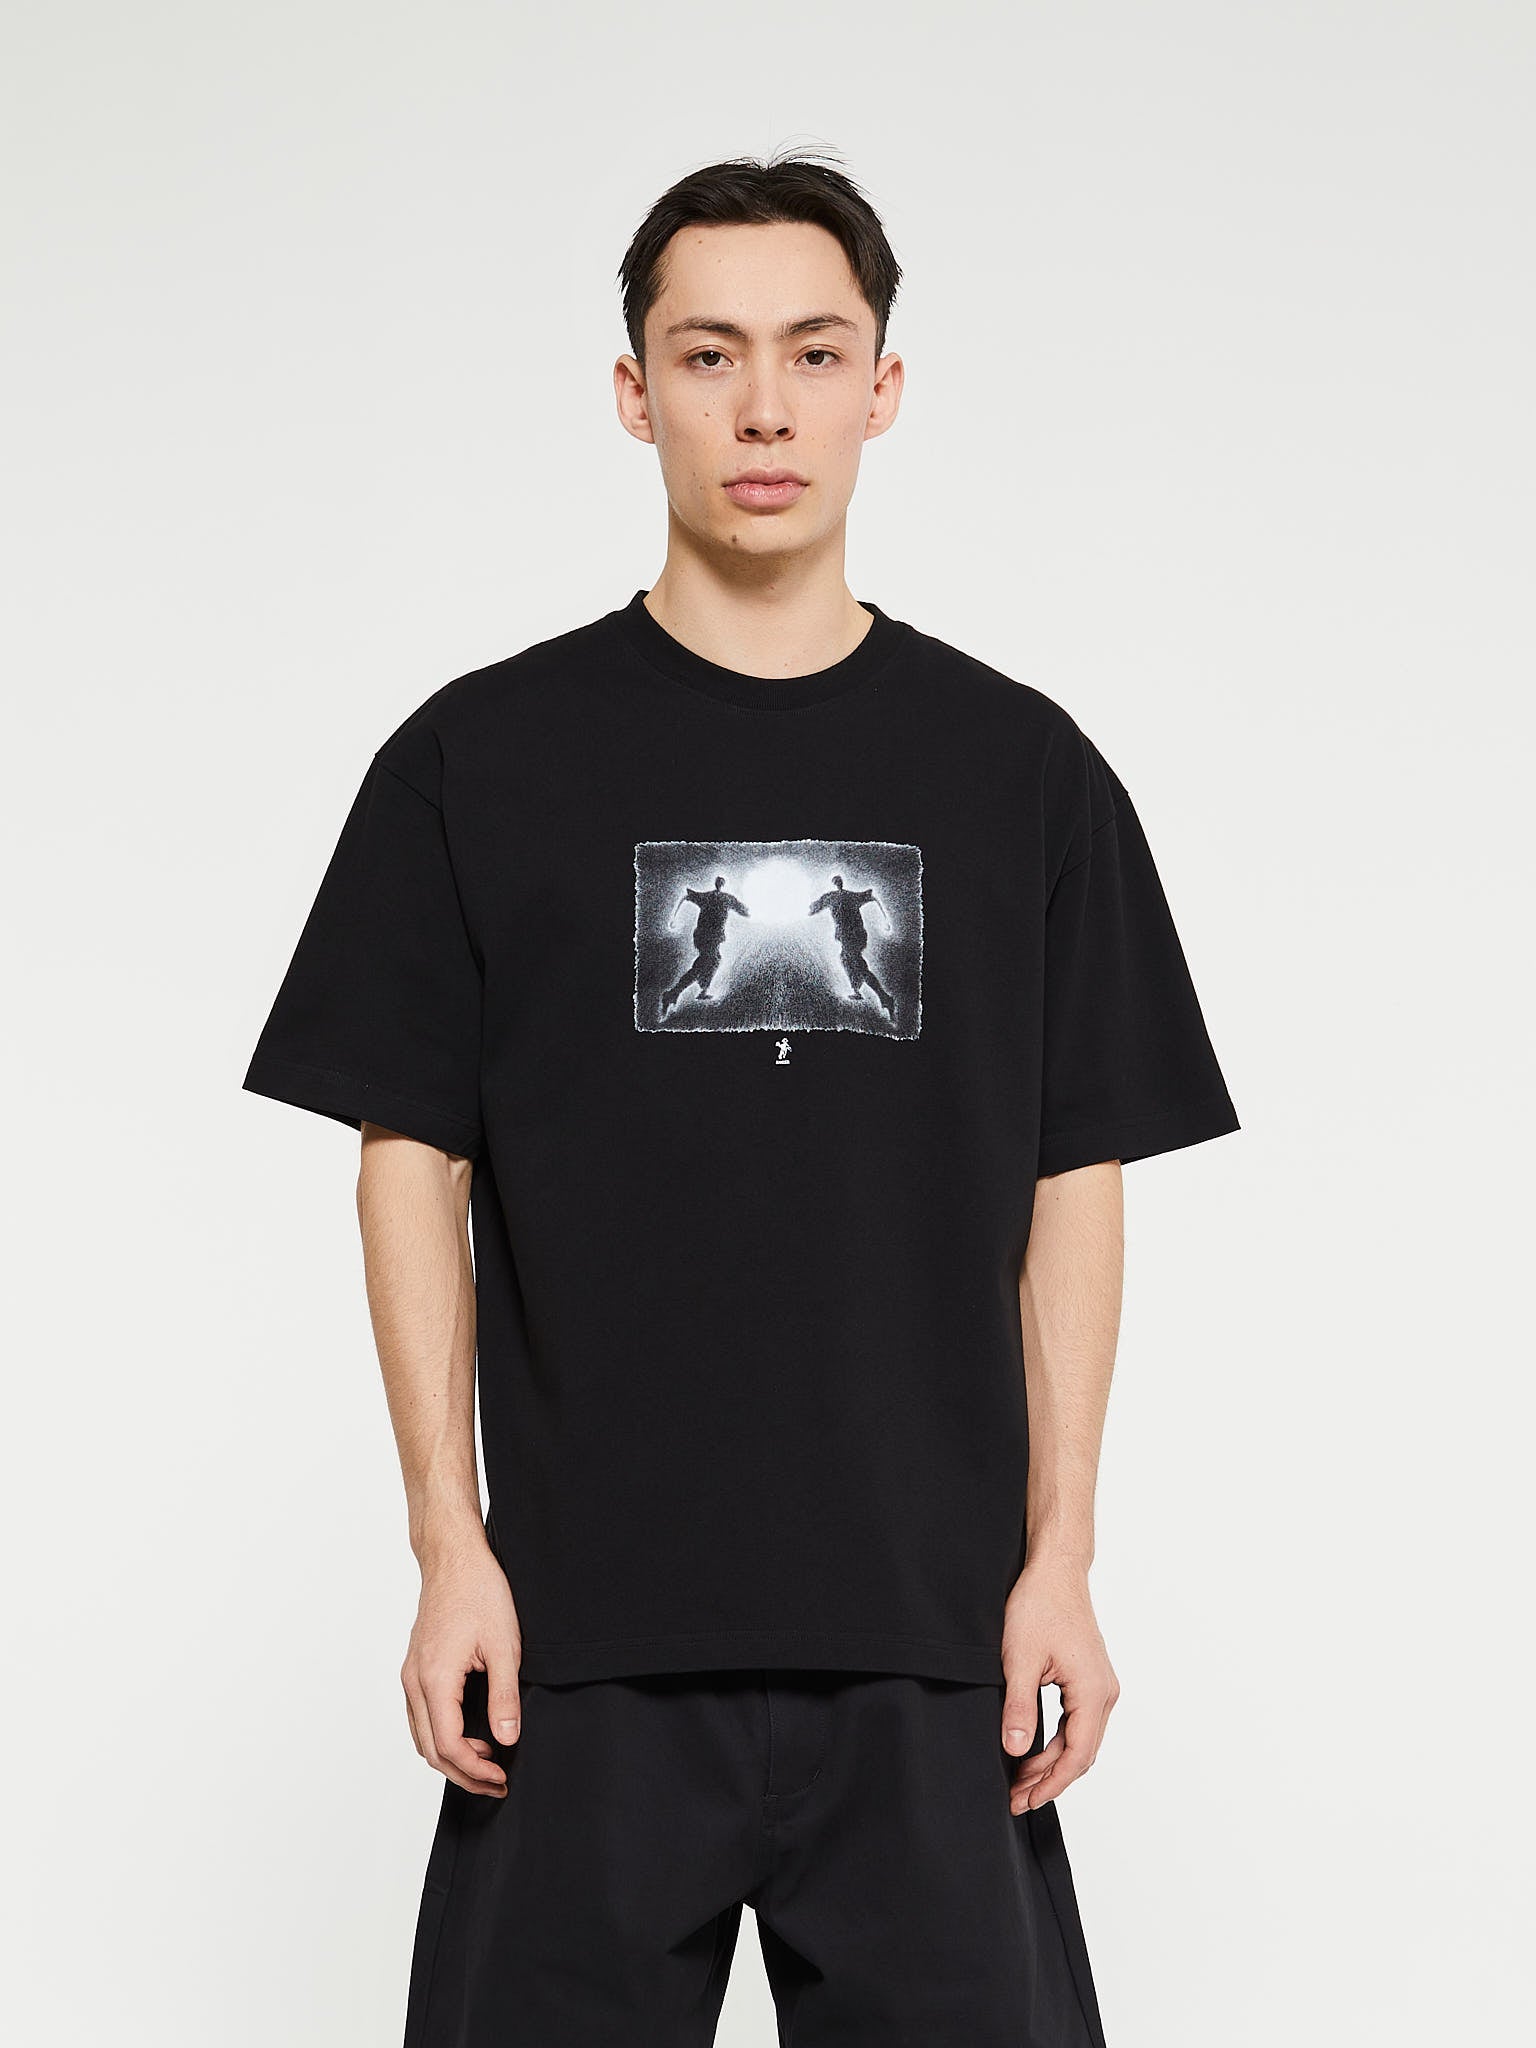 Dancer - Light T-Shirt in Black